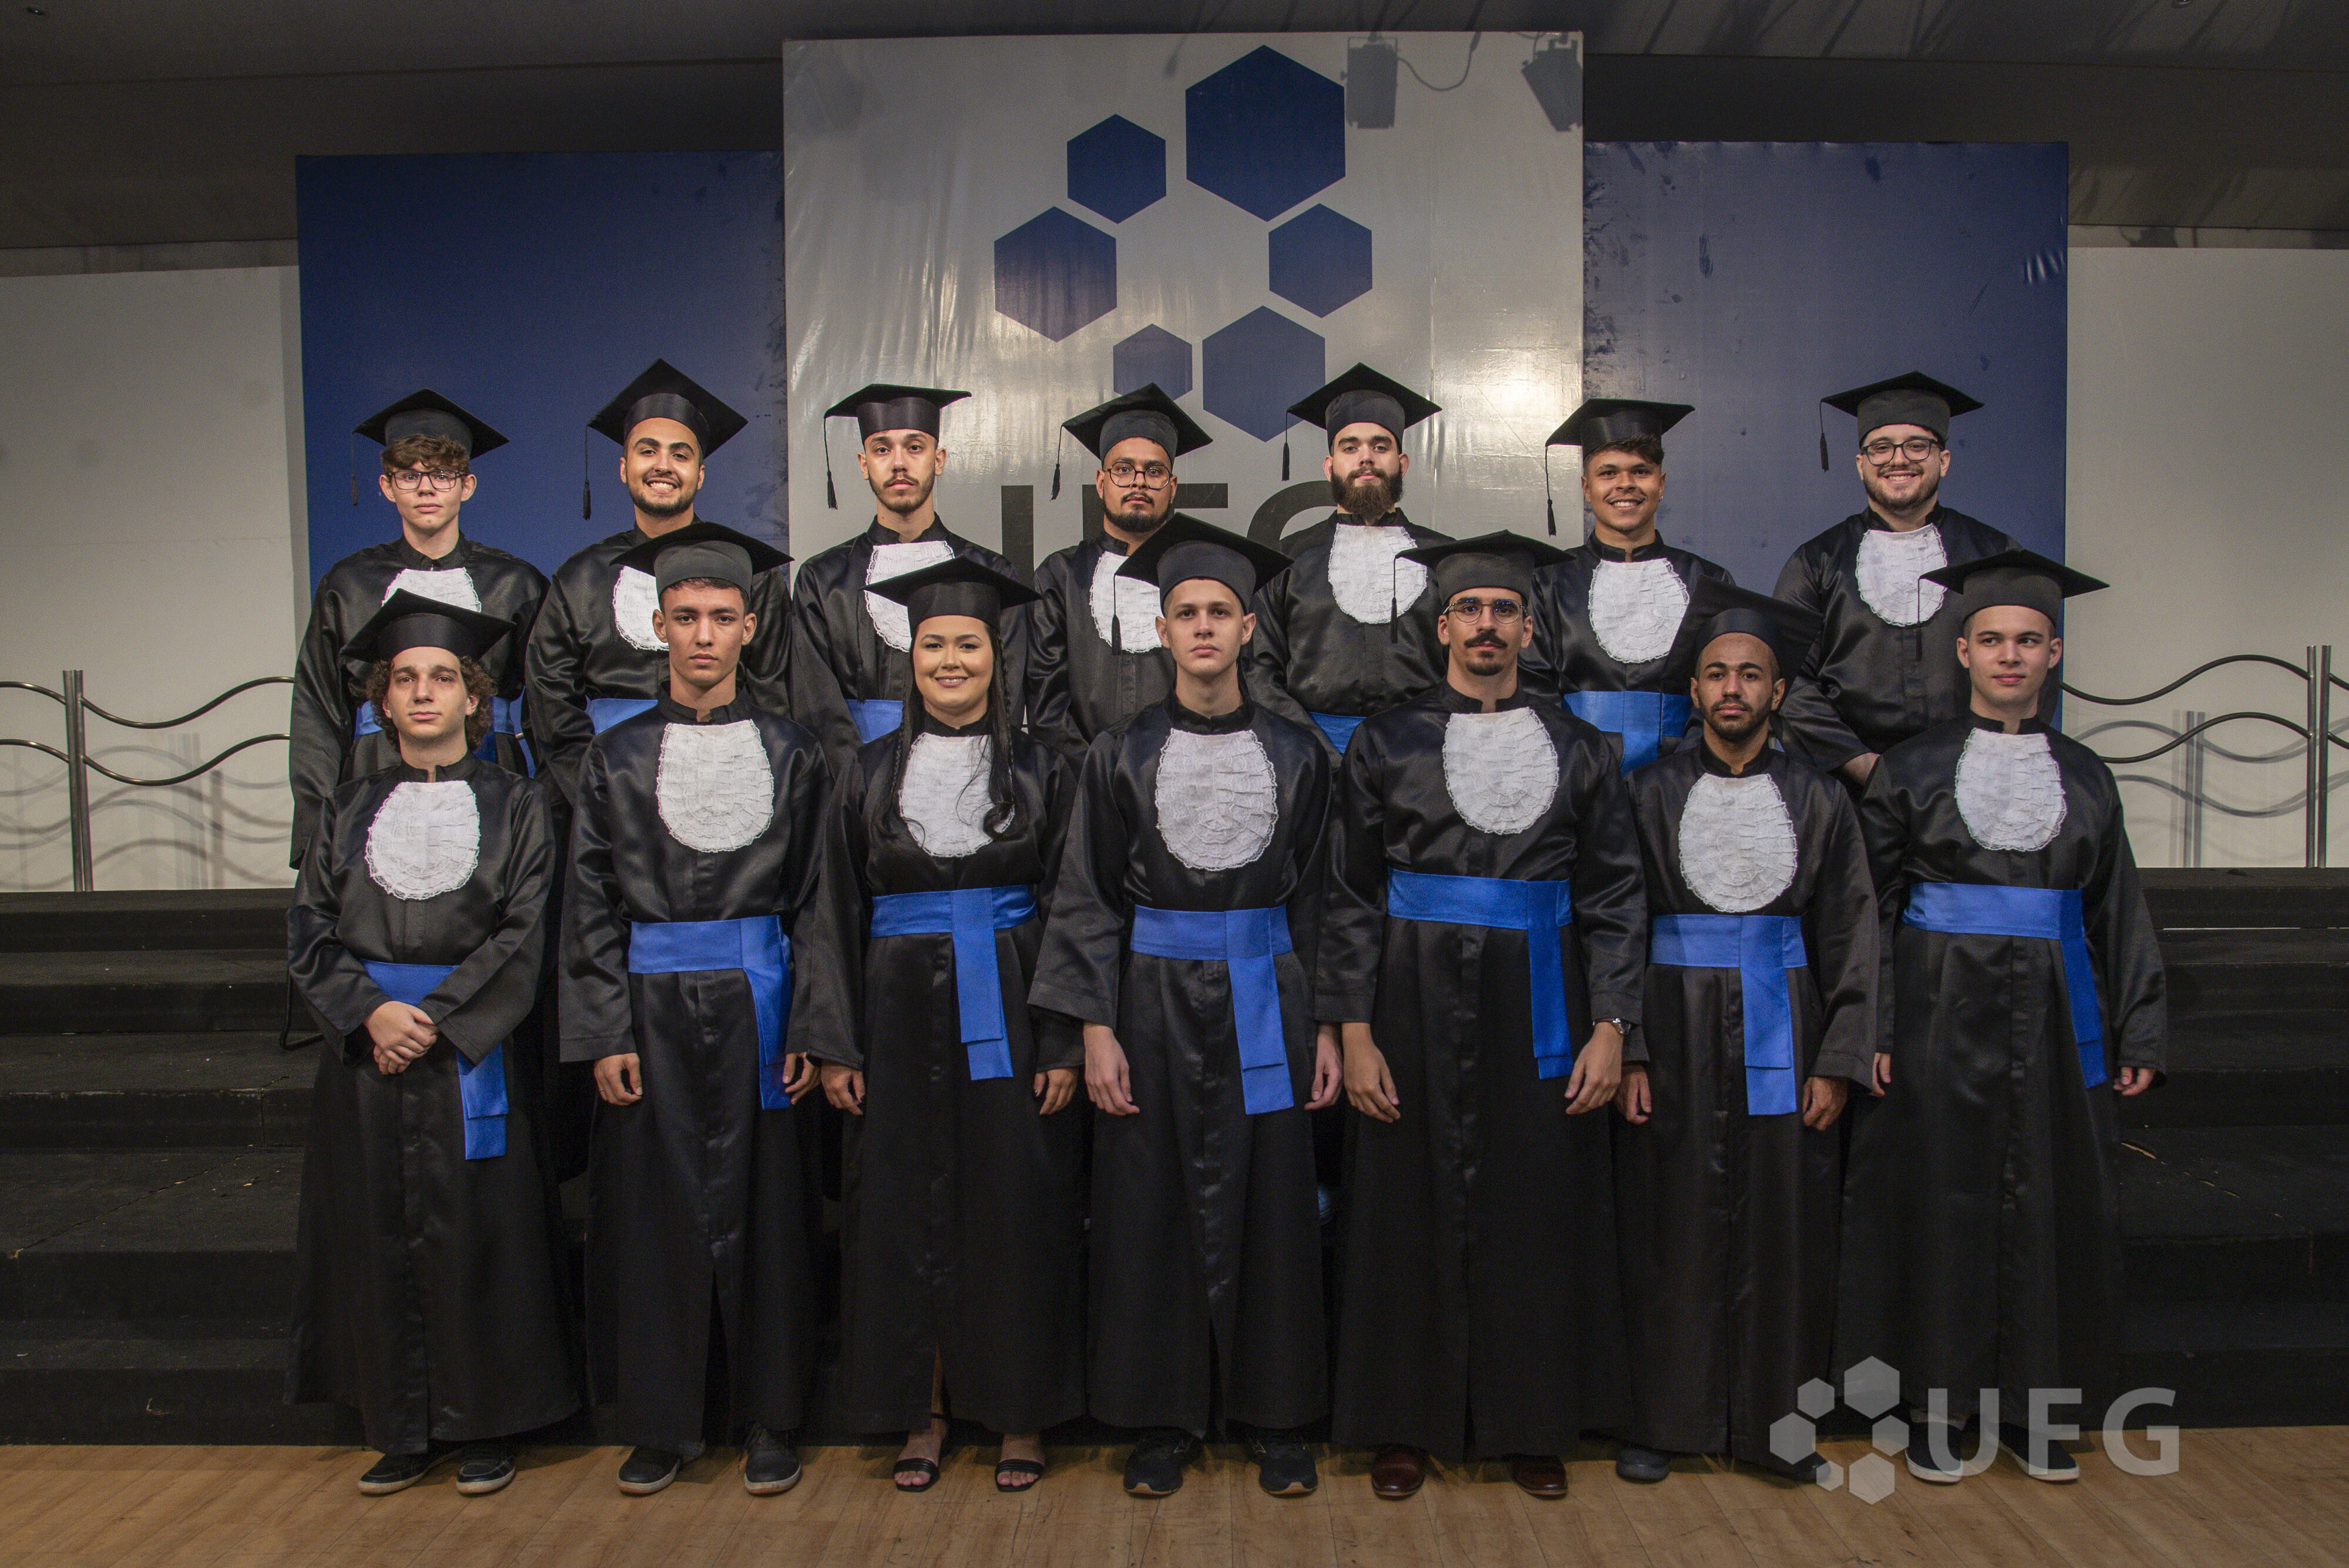 Formandos pioneiros da graduação em IA na UFG